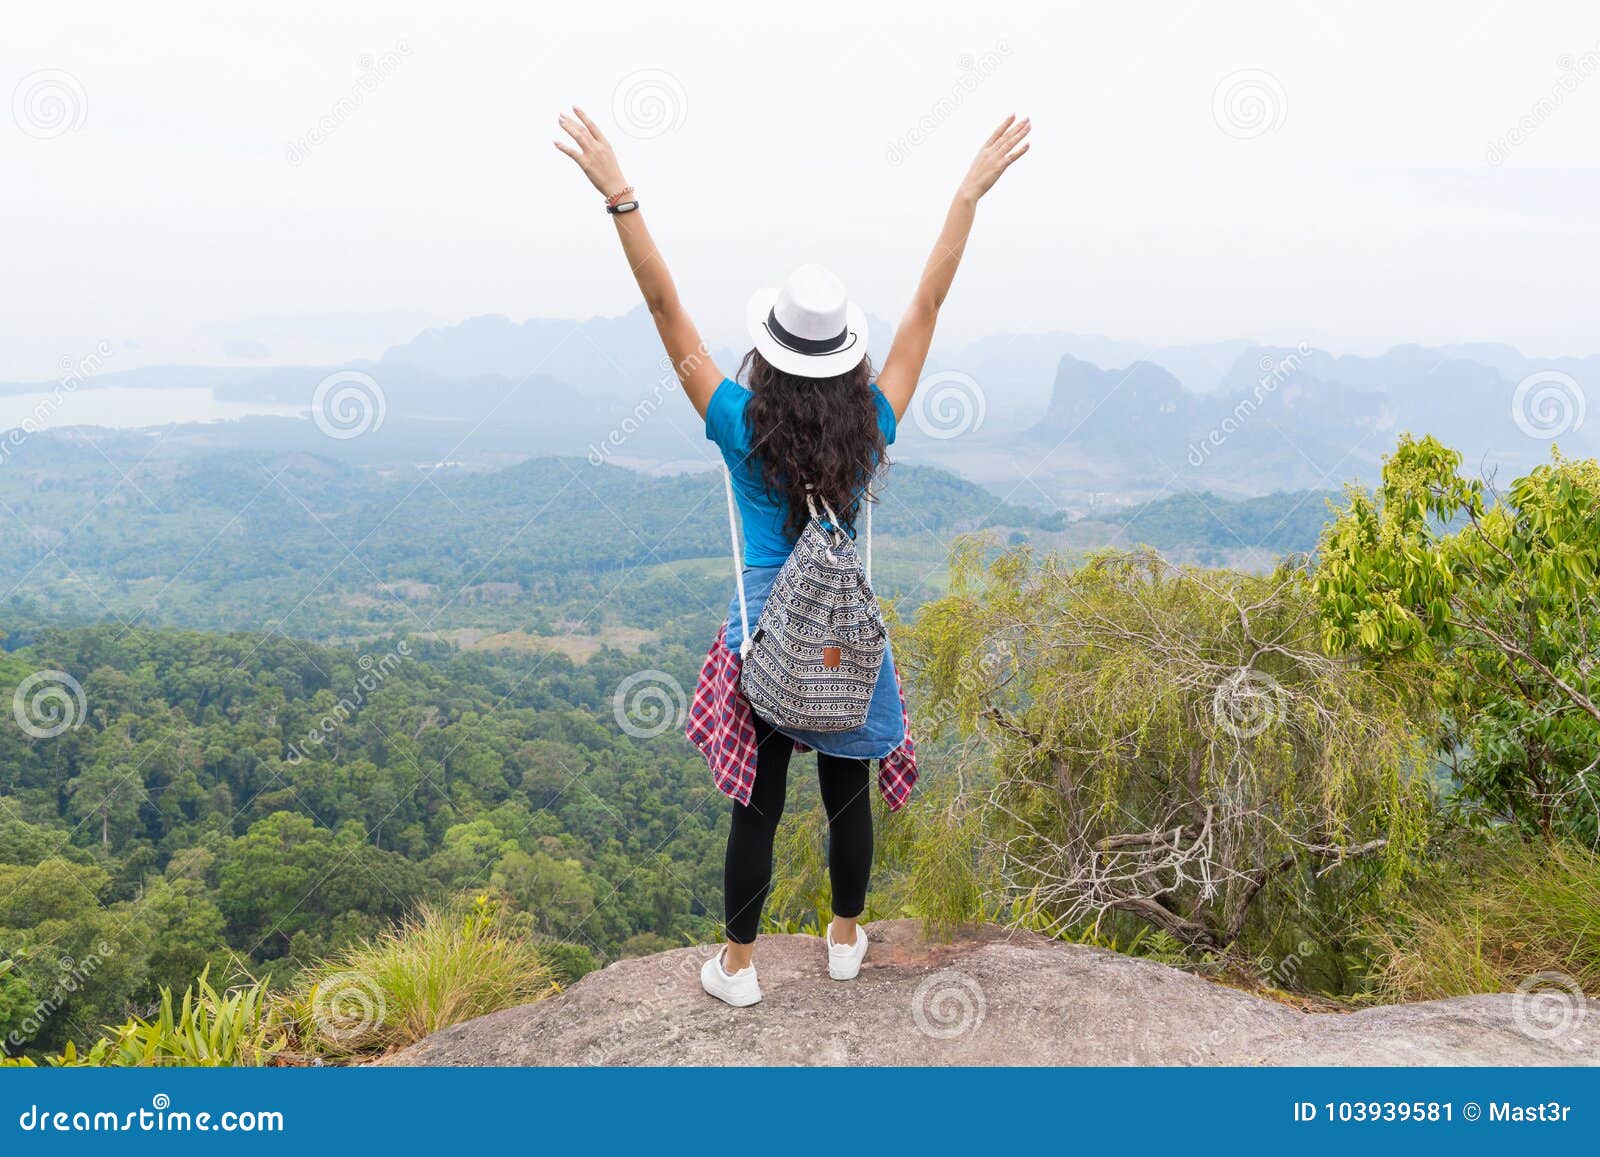 La ragazza turistica con lo zaino che sta della montagna delle mani sulla retrovisione sollevata superiore indietro gode di bello paesaggio, giovane donna sull'aumento